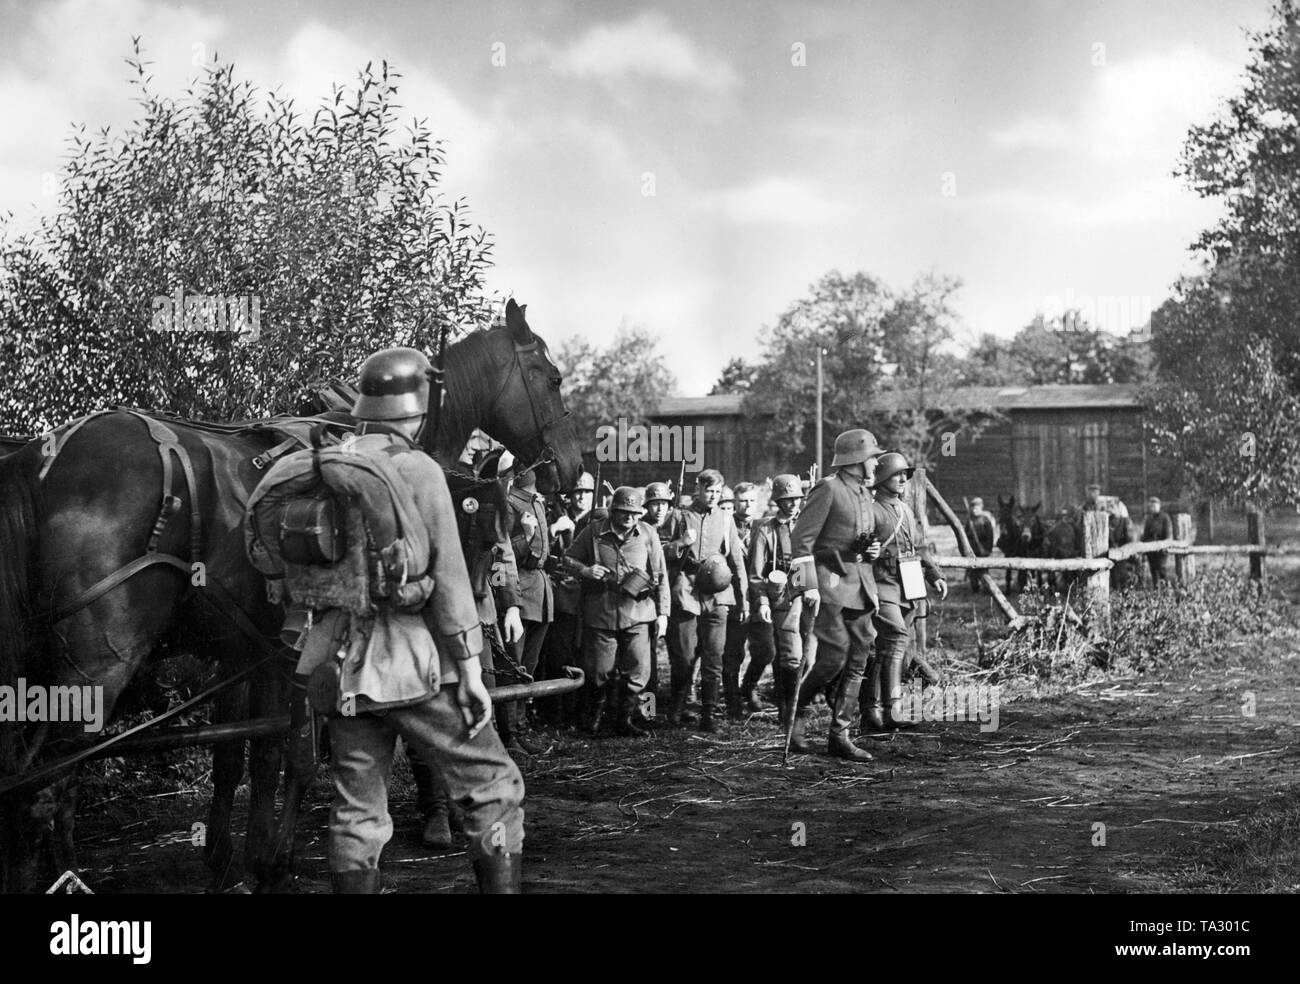 La película 'MUFA en sin patria' desde 1937 es sobre el Freikorps "División de hierro", una unidad compuesta de voluntarios alemanes y los alemanes bálticos los combates de la recién fundada estados bálticos contra el Ejército Rojo soviético. Foto de stock